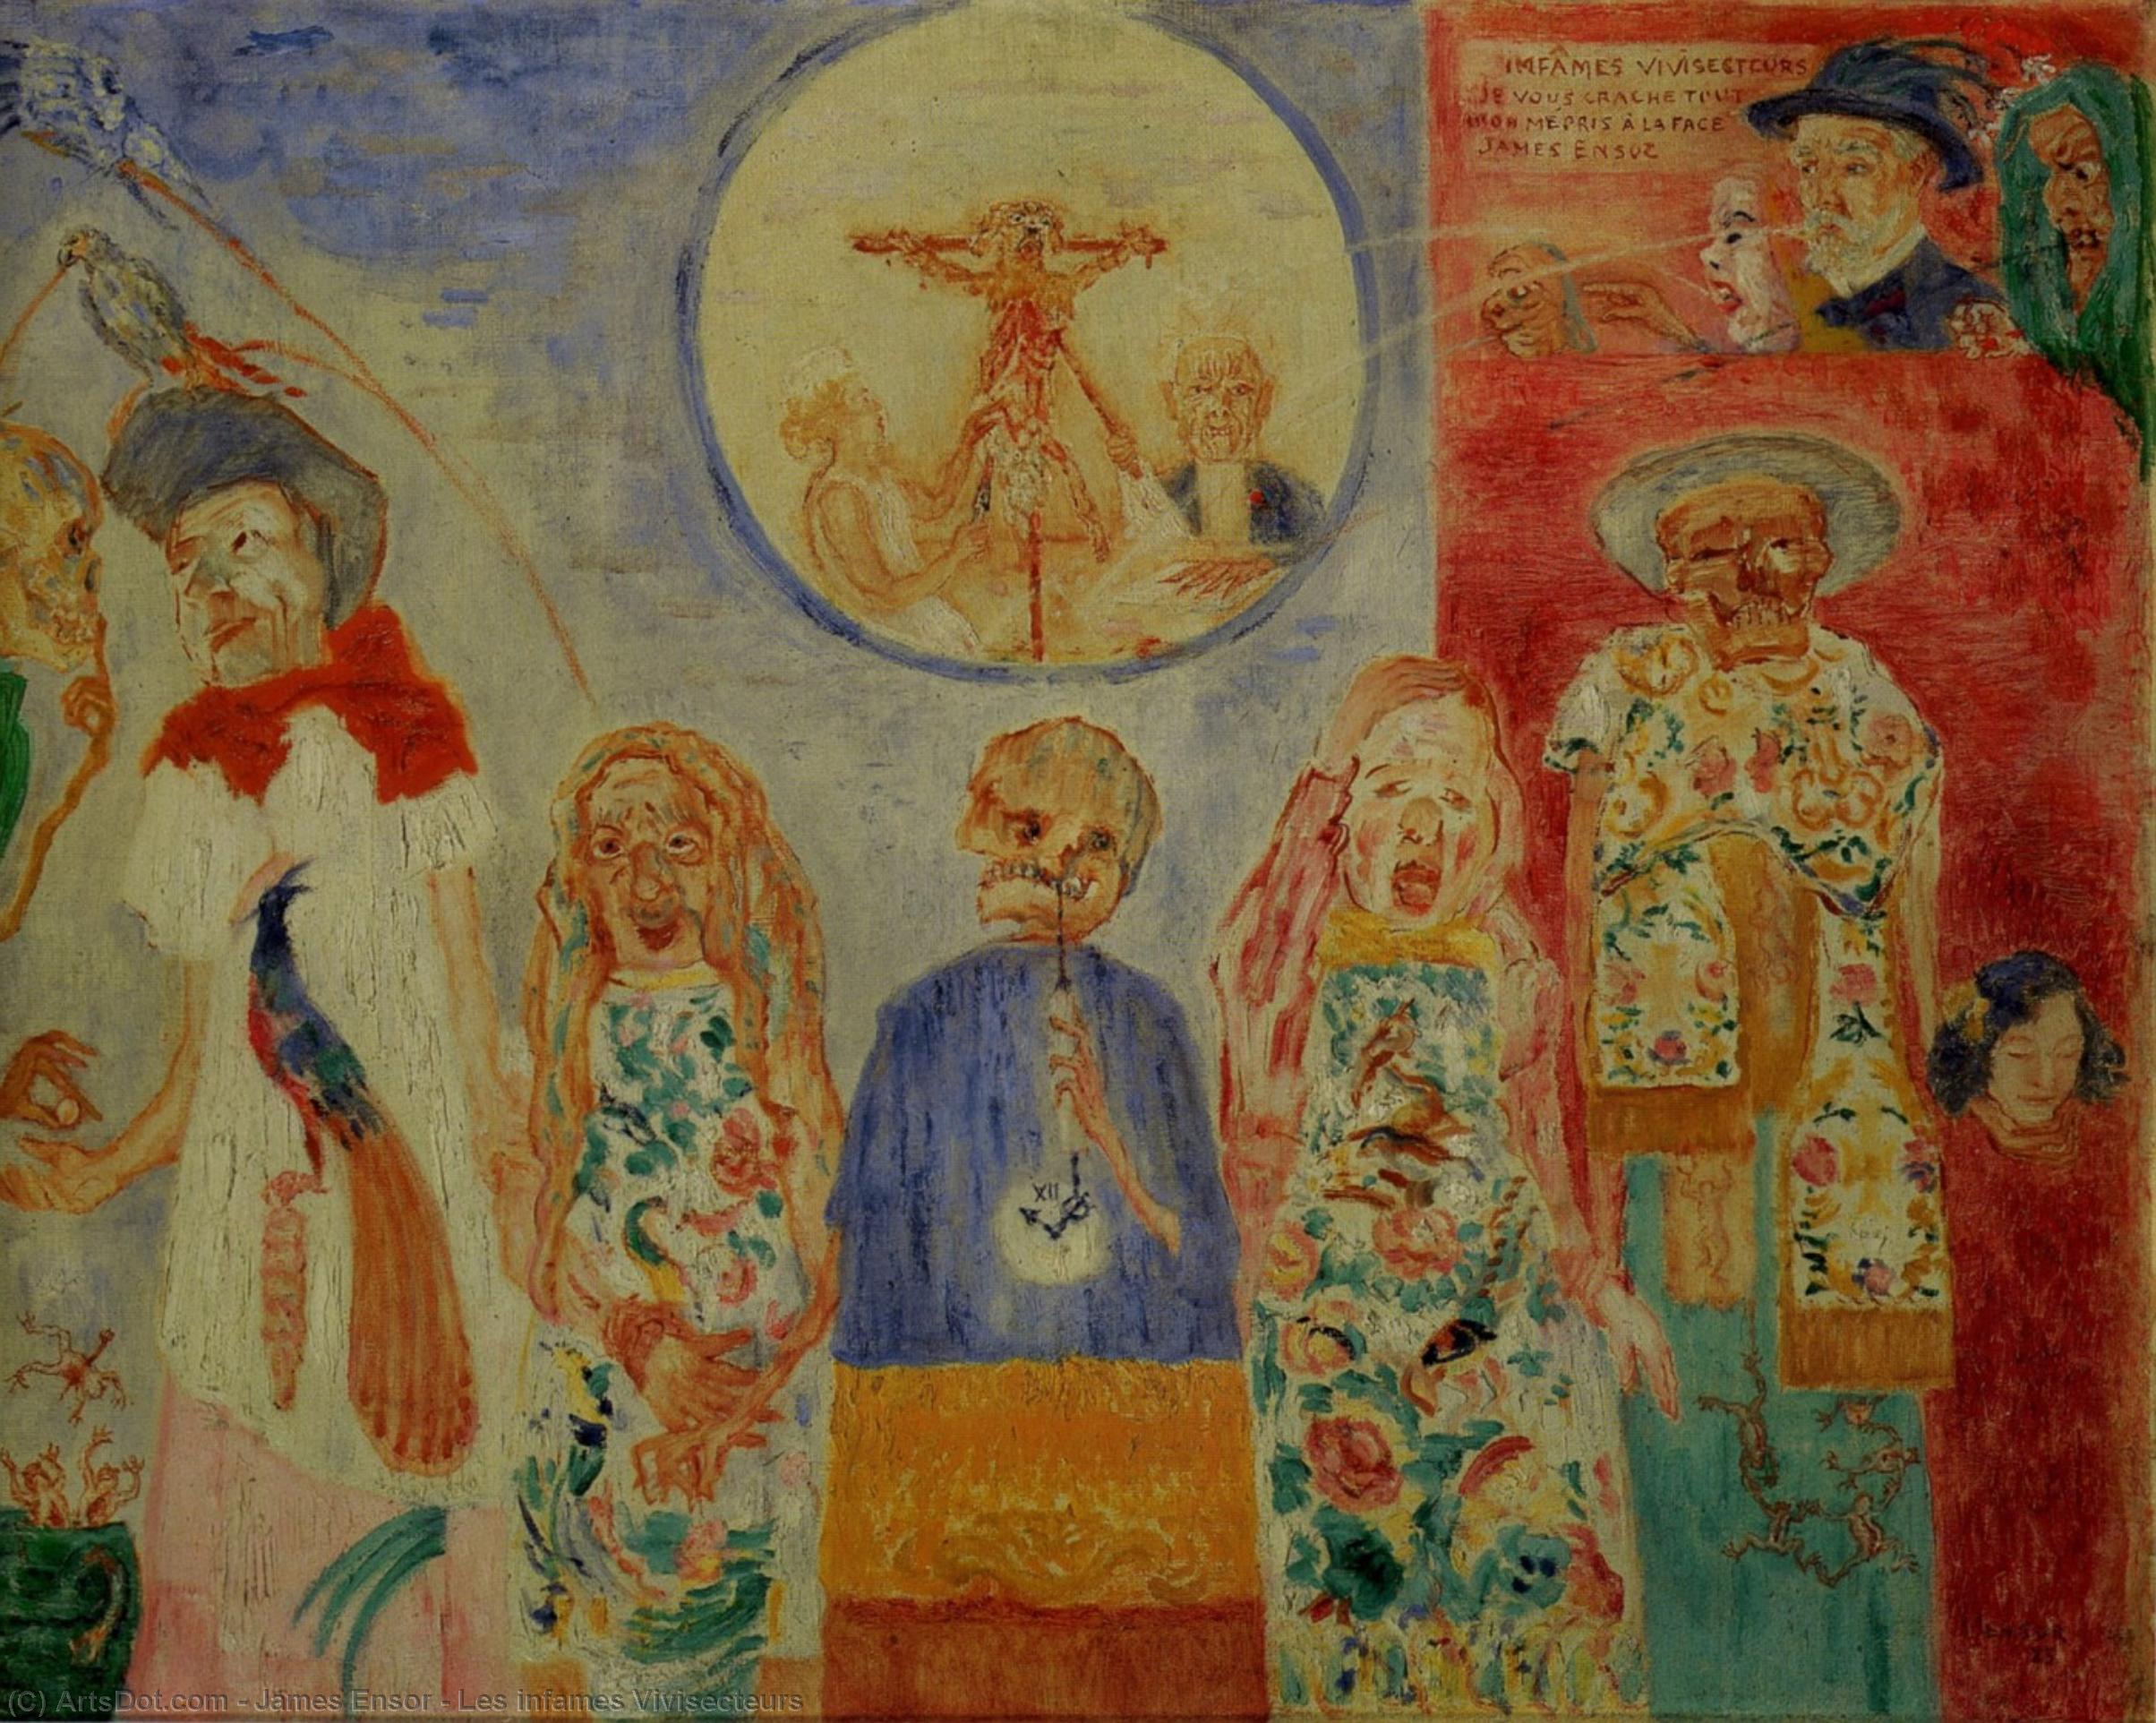 WikiOO.org - אנציקלופדיה לאמנויות יפות - ציור, יצירות אמנות James Ensor - Les infames Vivisecteurs